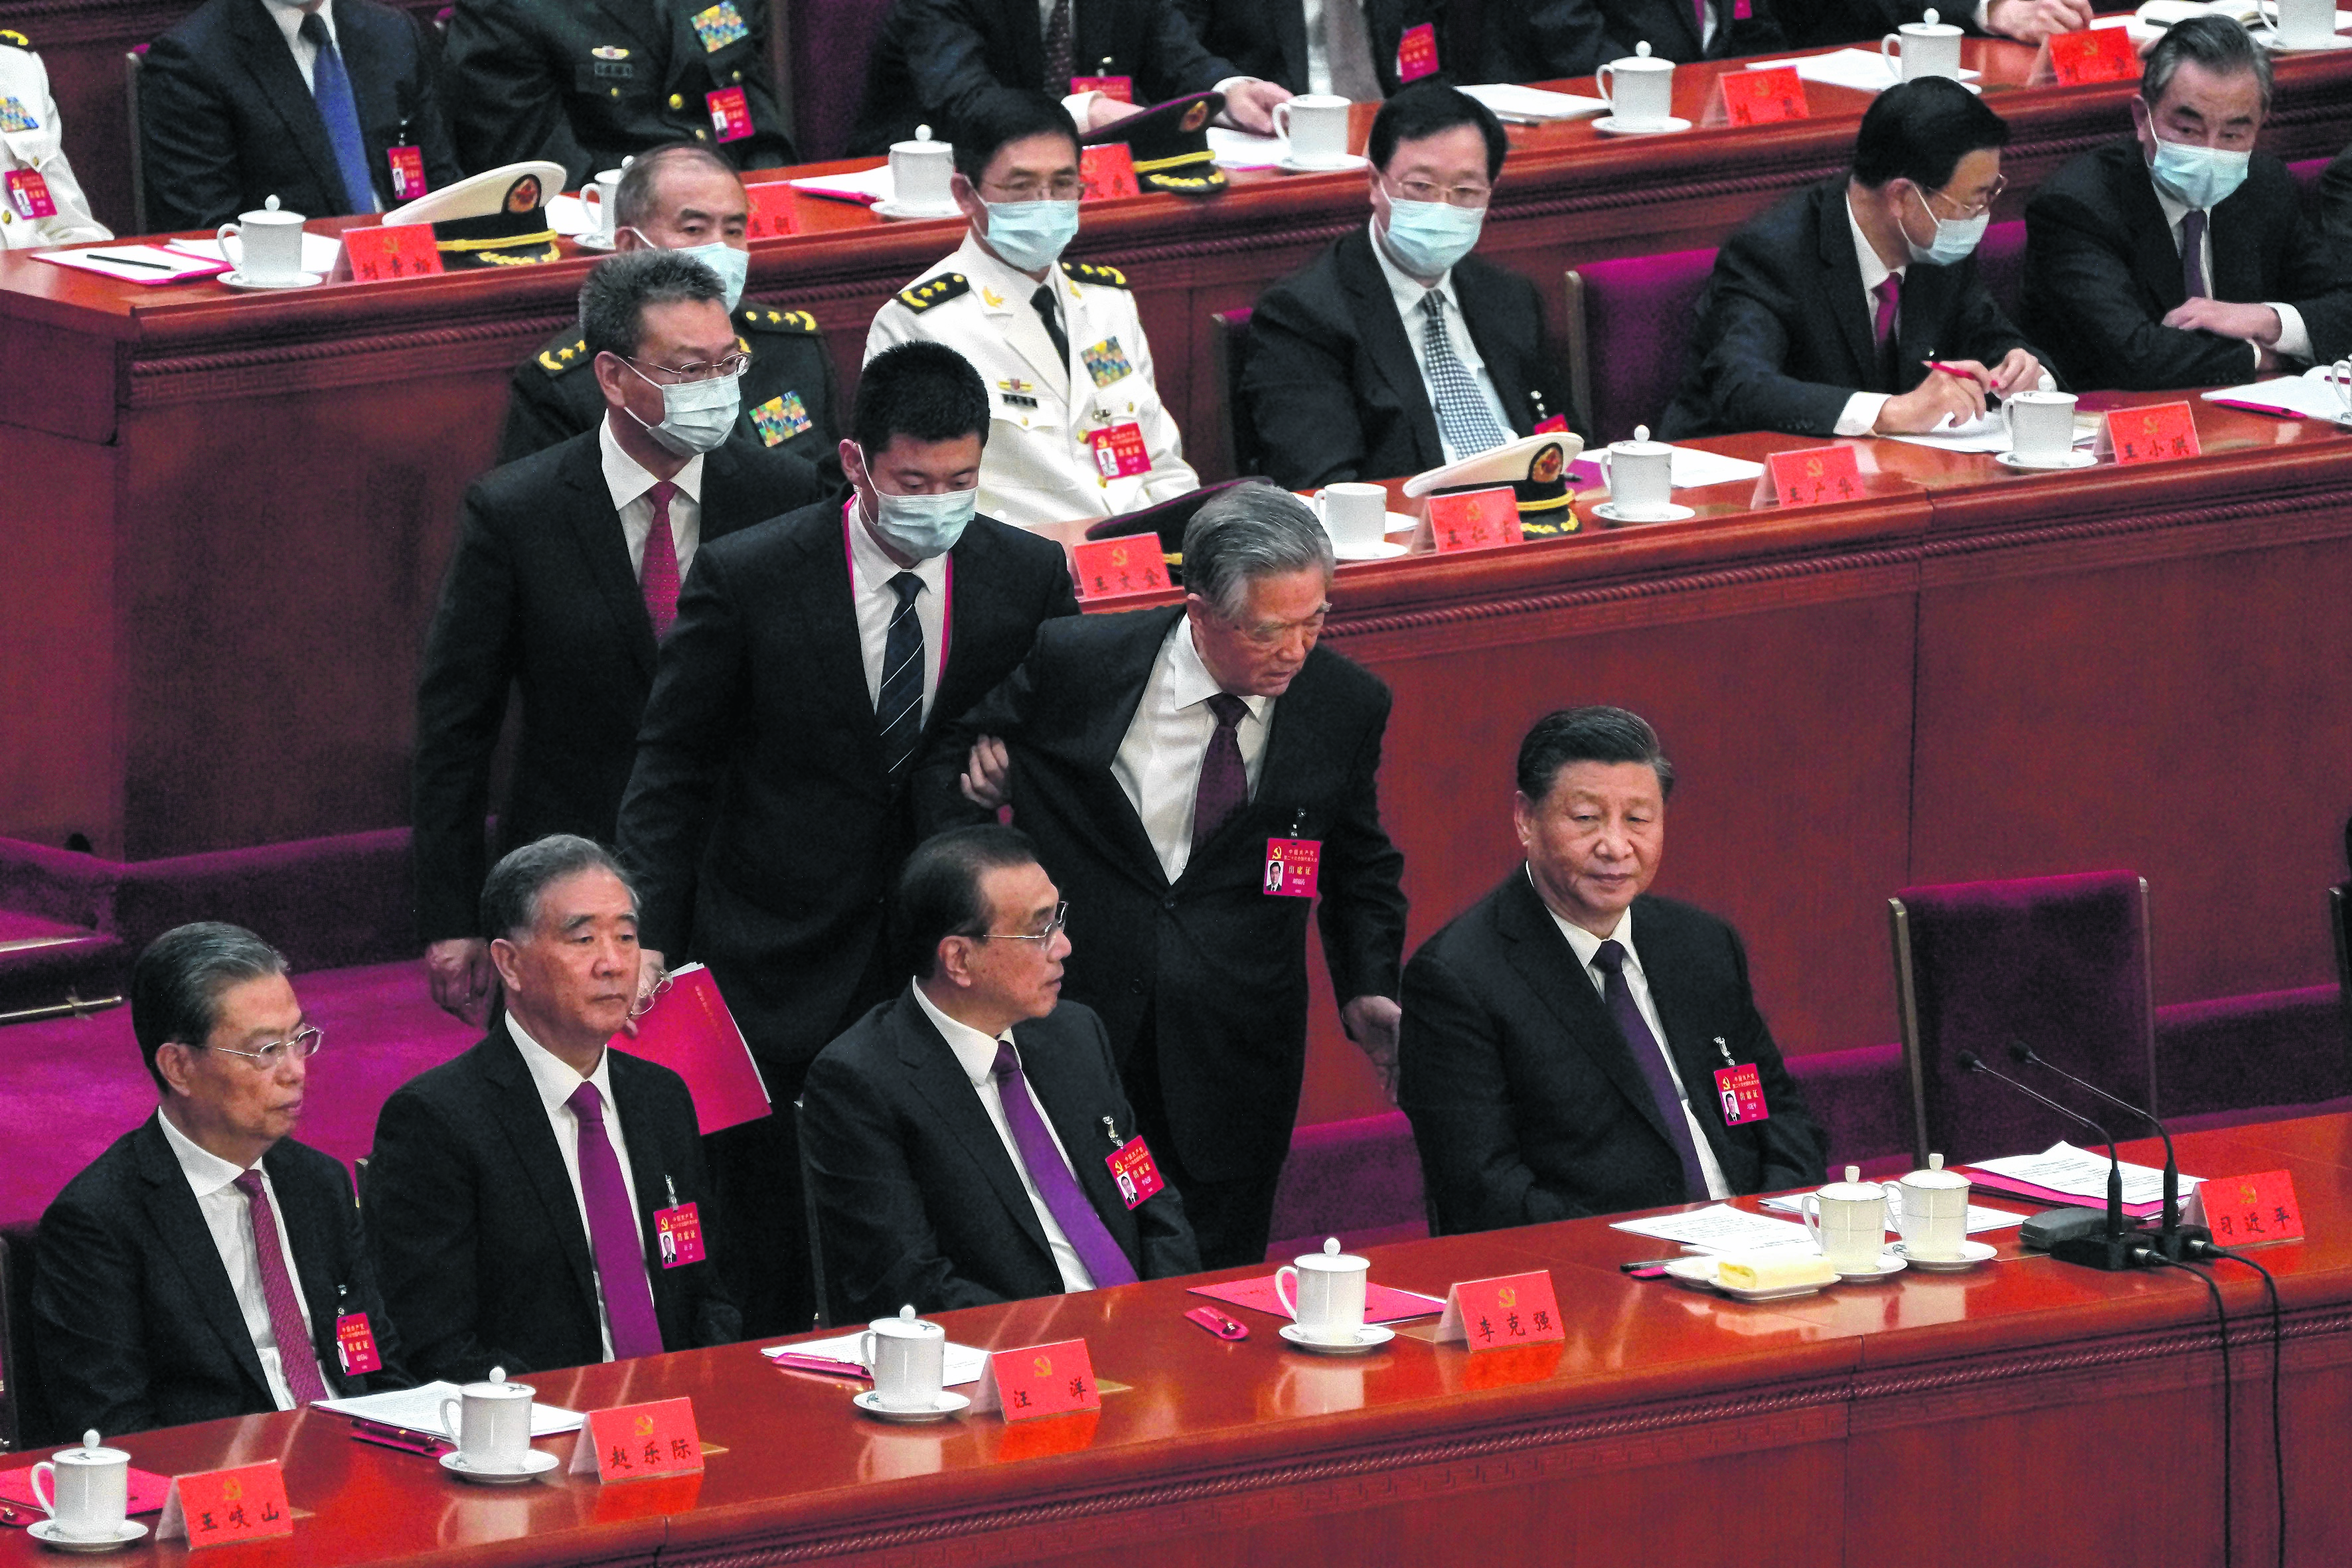 Hu Jintao intenta decirle algo al presidente, antes de que se lo lleven.
